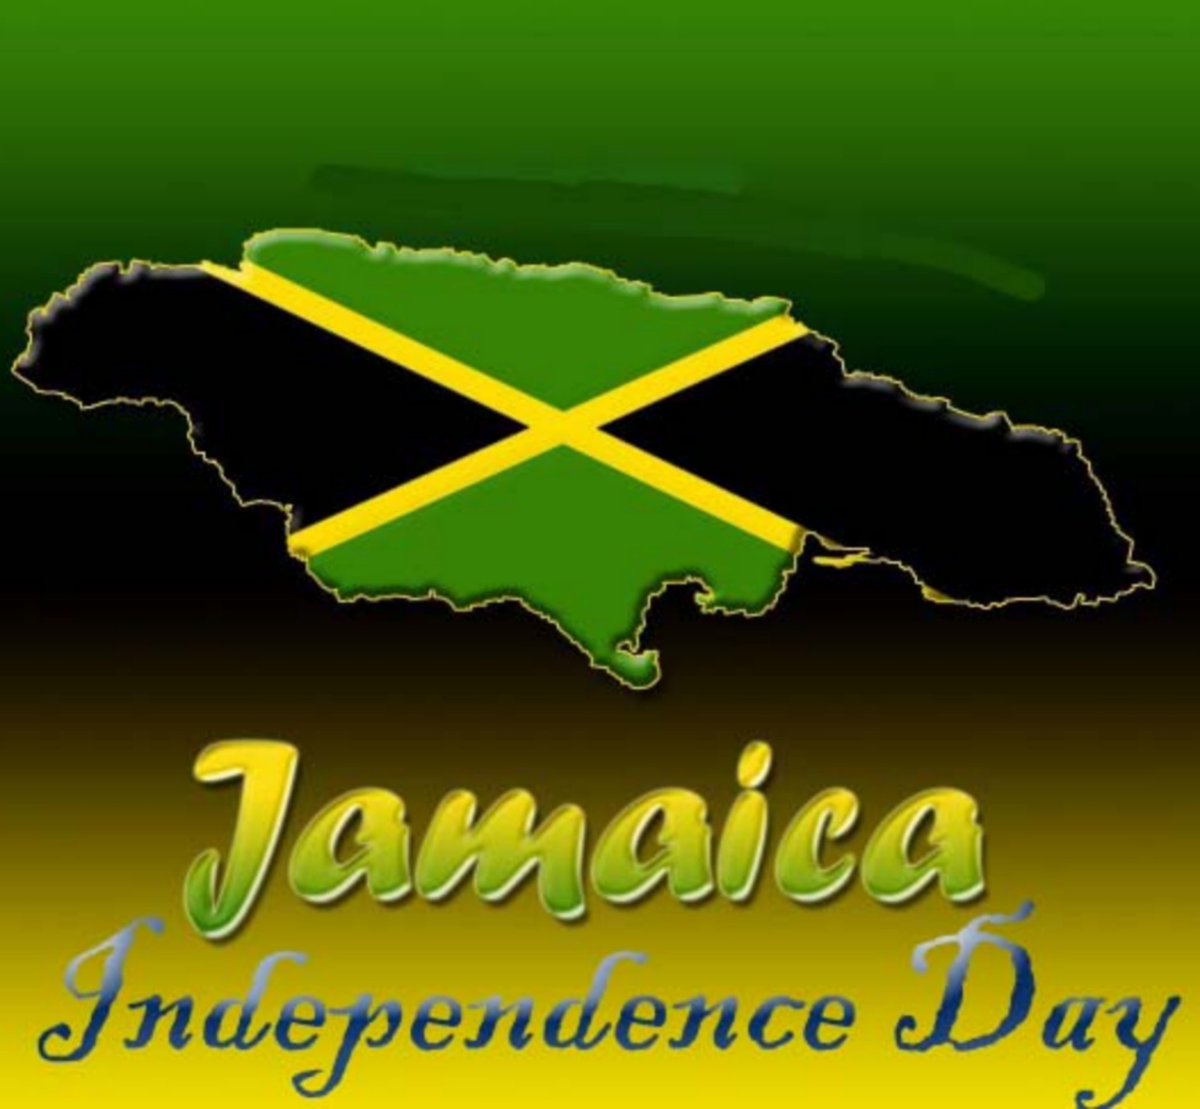 Happy Independence Day. #Jamaica #LandWeLove #ANationOnAMission #OutOfManyOnePeople #ProudAndFree #WiLikkleButWiTallawah 🇯🇲✊🏾